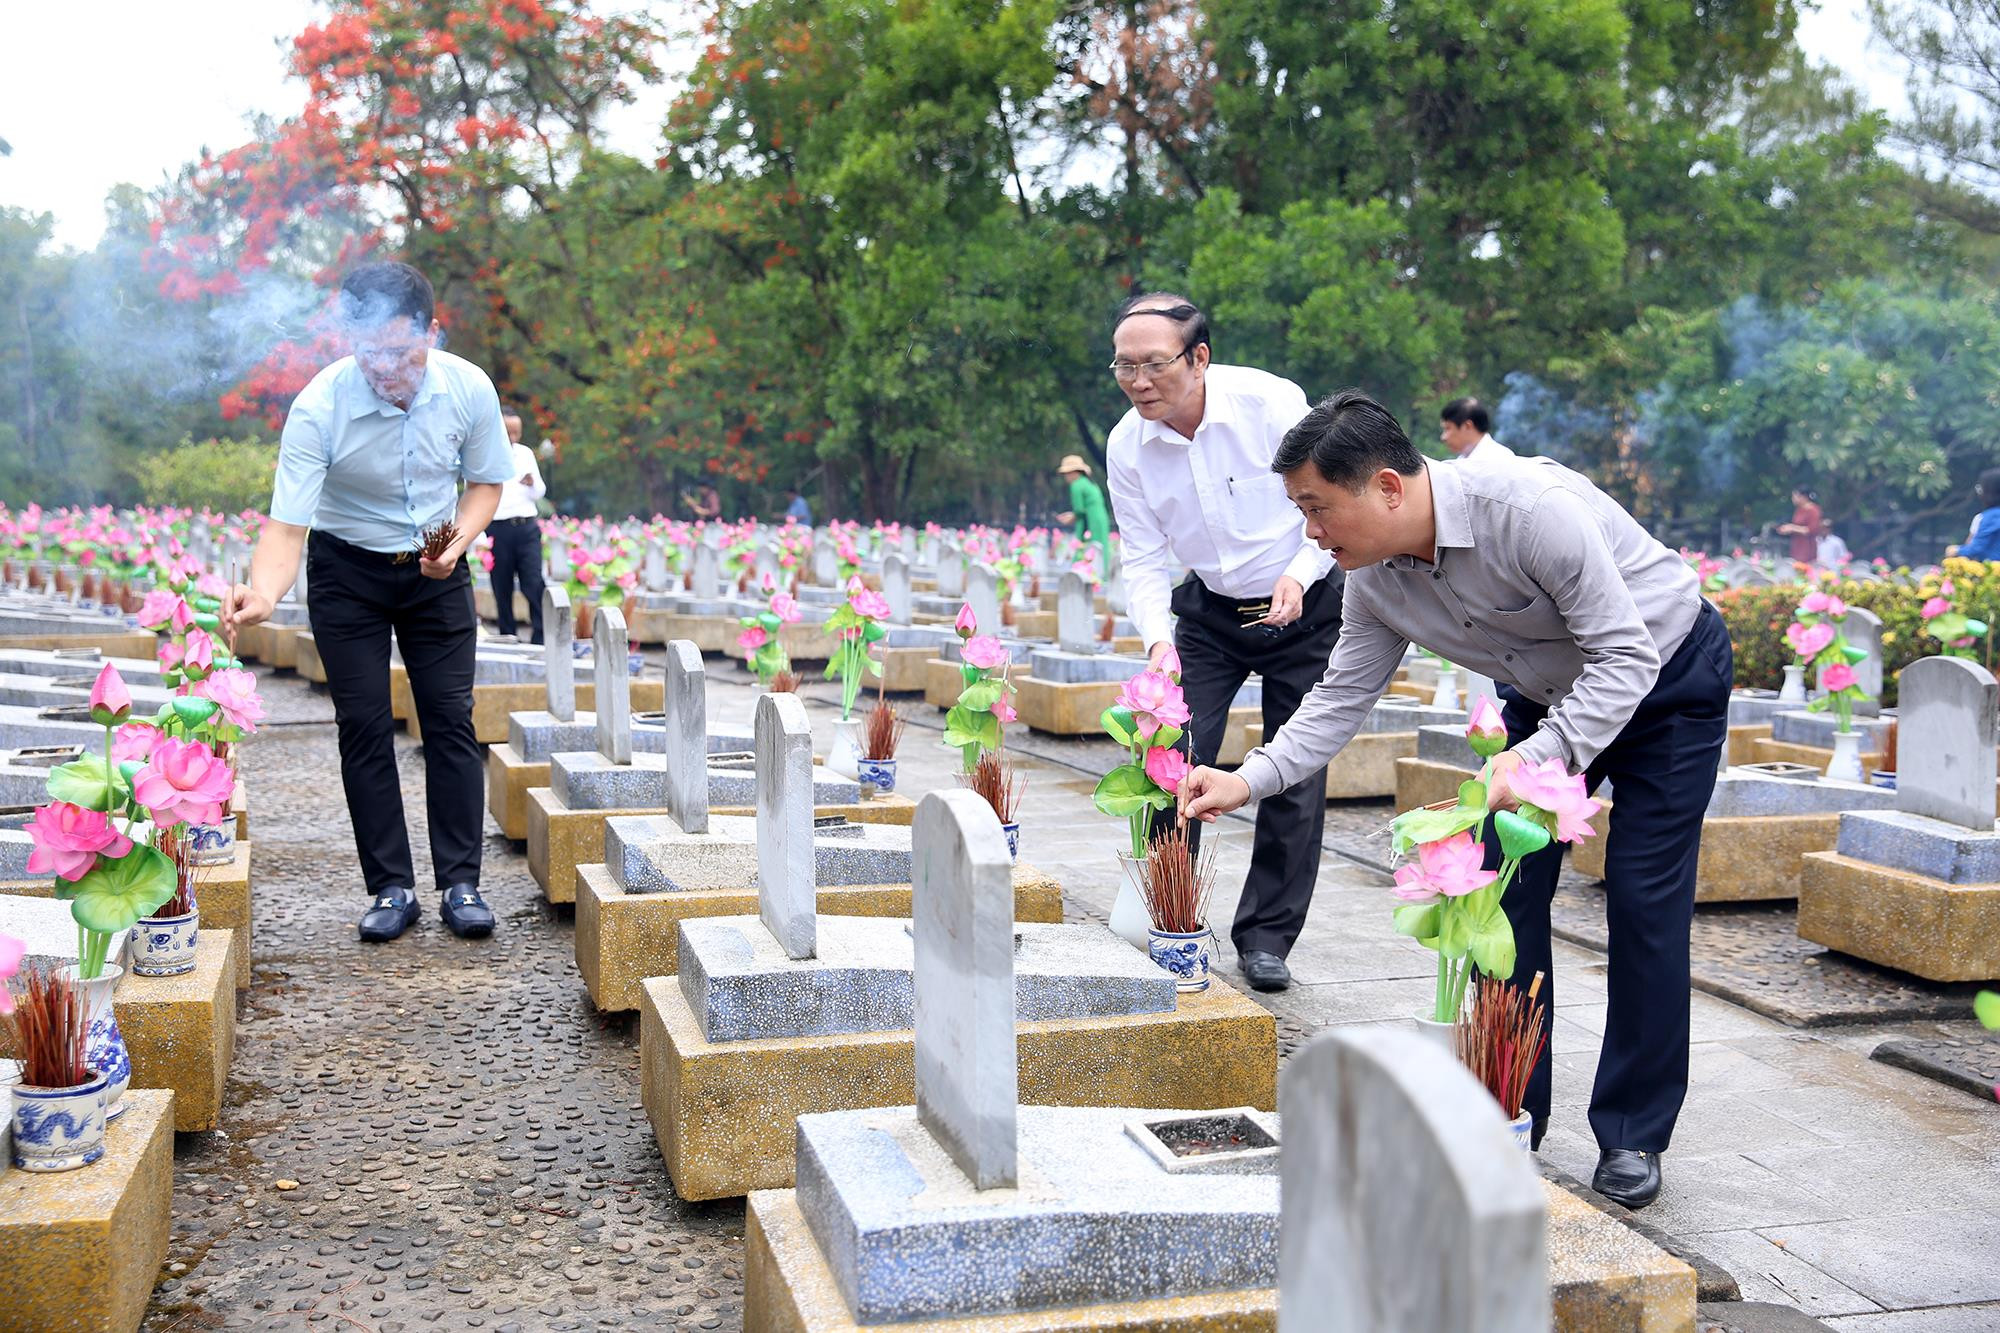 Đồng chí Thái Thanh Quý dâng hương tại các phần mộ liệt sĩ tỉnh Nghệ An ở Nghĩa trang liệt sỹ Quốc gia Trường Sơn. Ảnh: Đức Anh